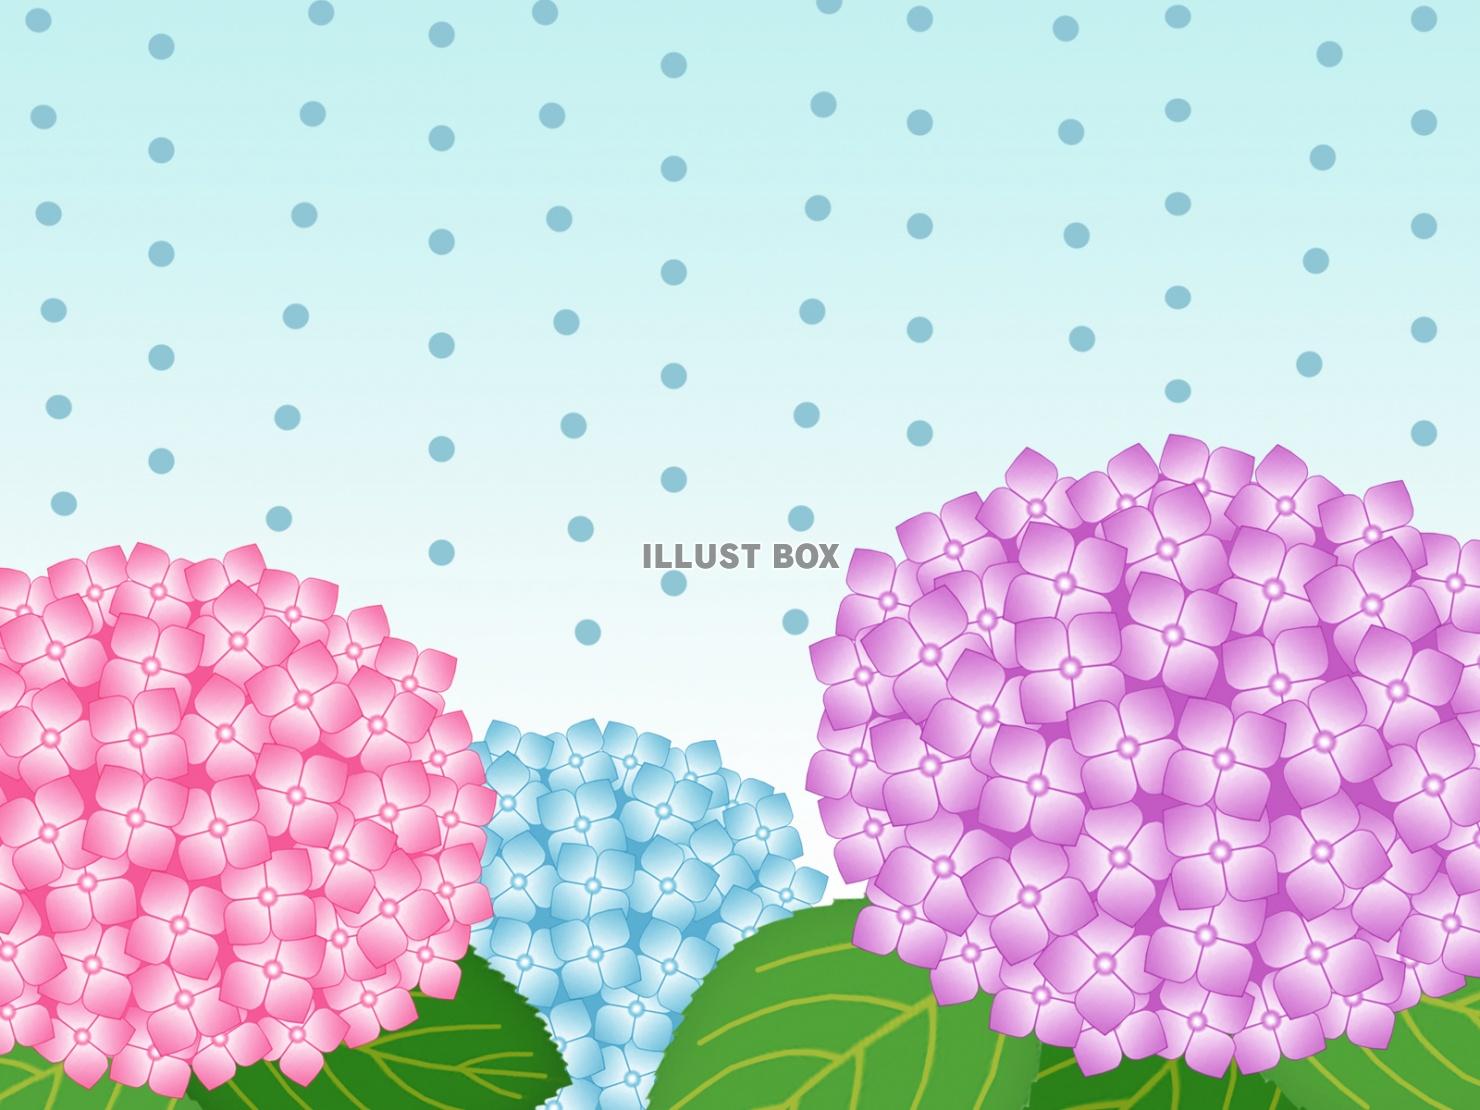 雨降りの紫陽花壁紙画像シンプル背景素材イラスト